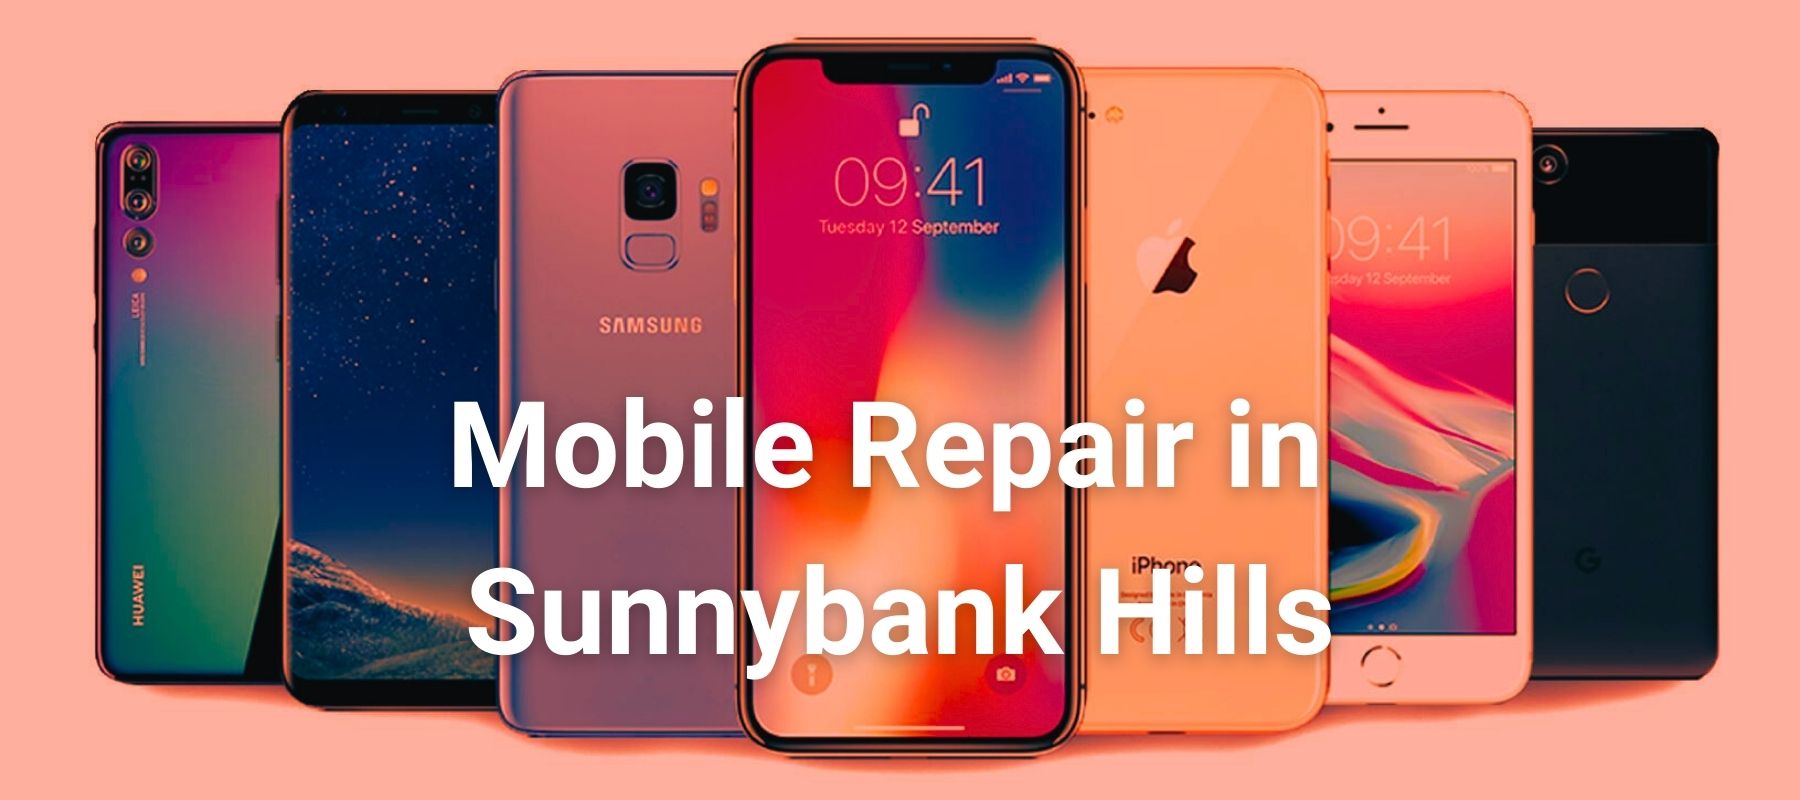 Mobile Repair in sunnybank hills